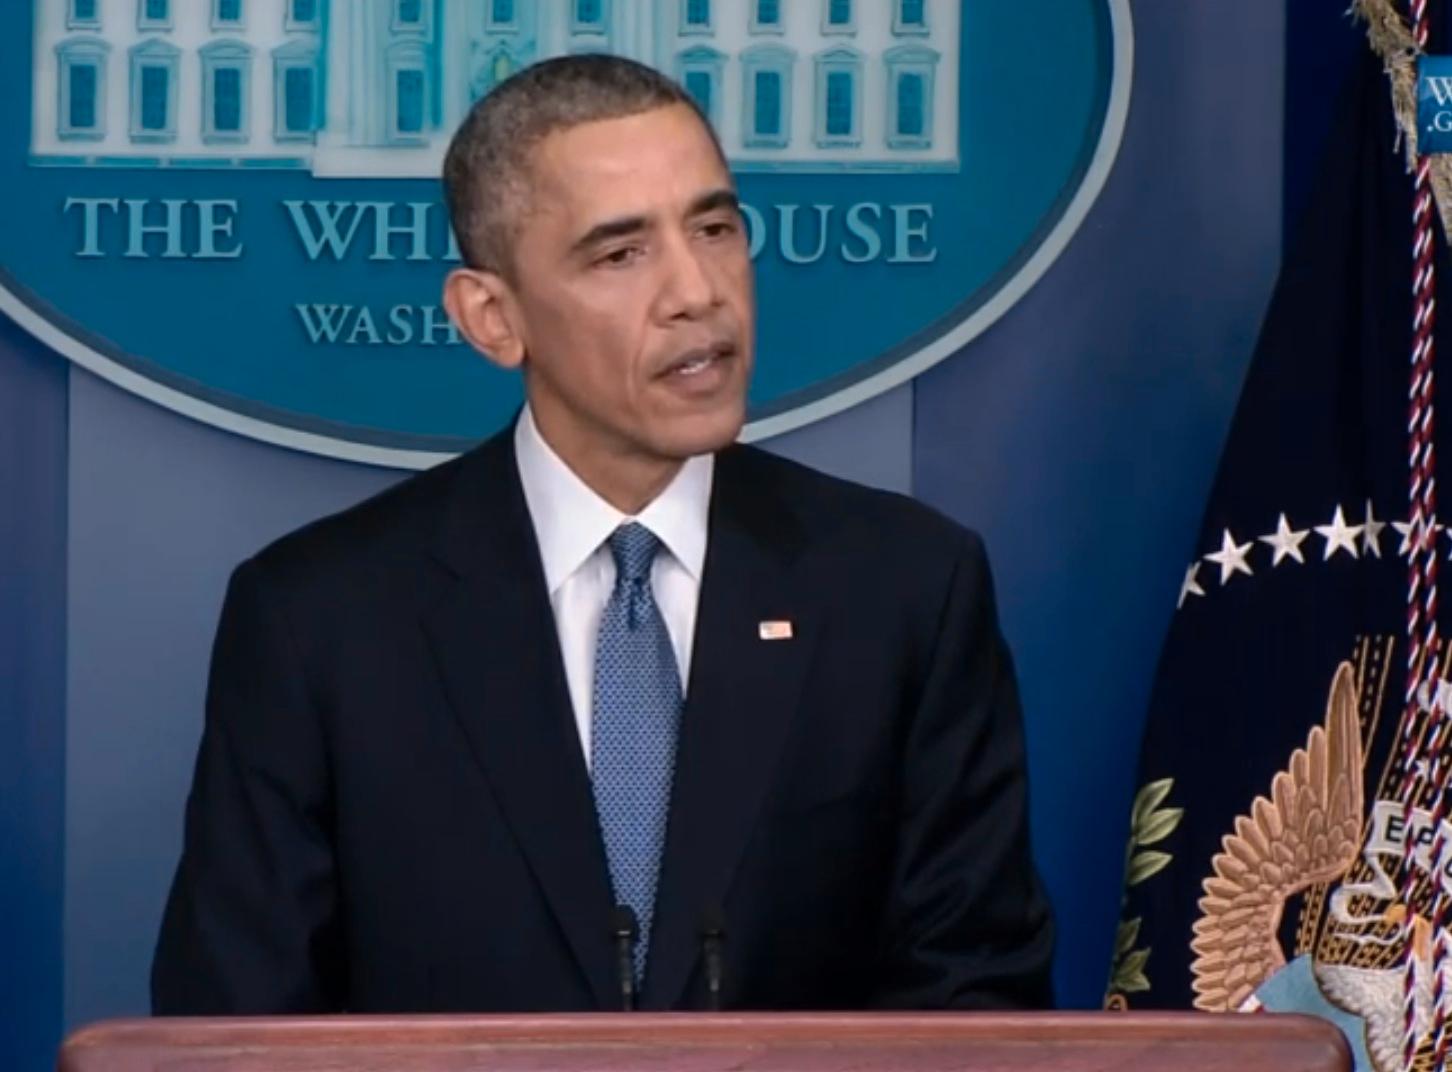 Barack Obama pekade under en presskonferens på fredagen ut Nordkorea som ansvarig för cyberattacken och uppgav att USA tänker svara på aggressionen.